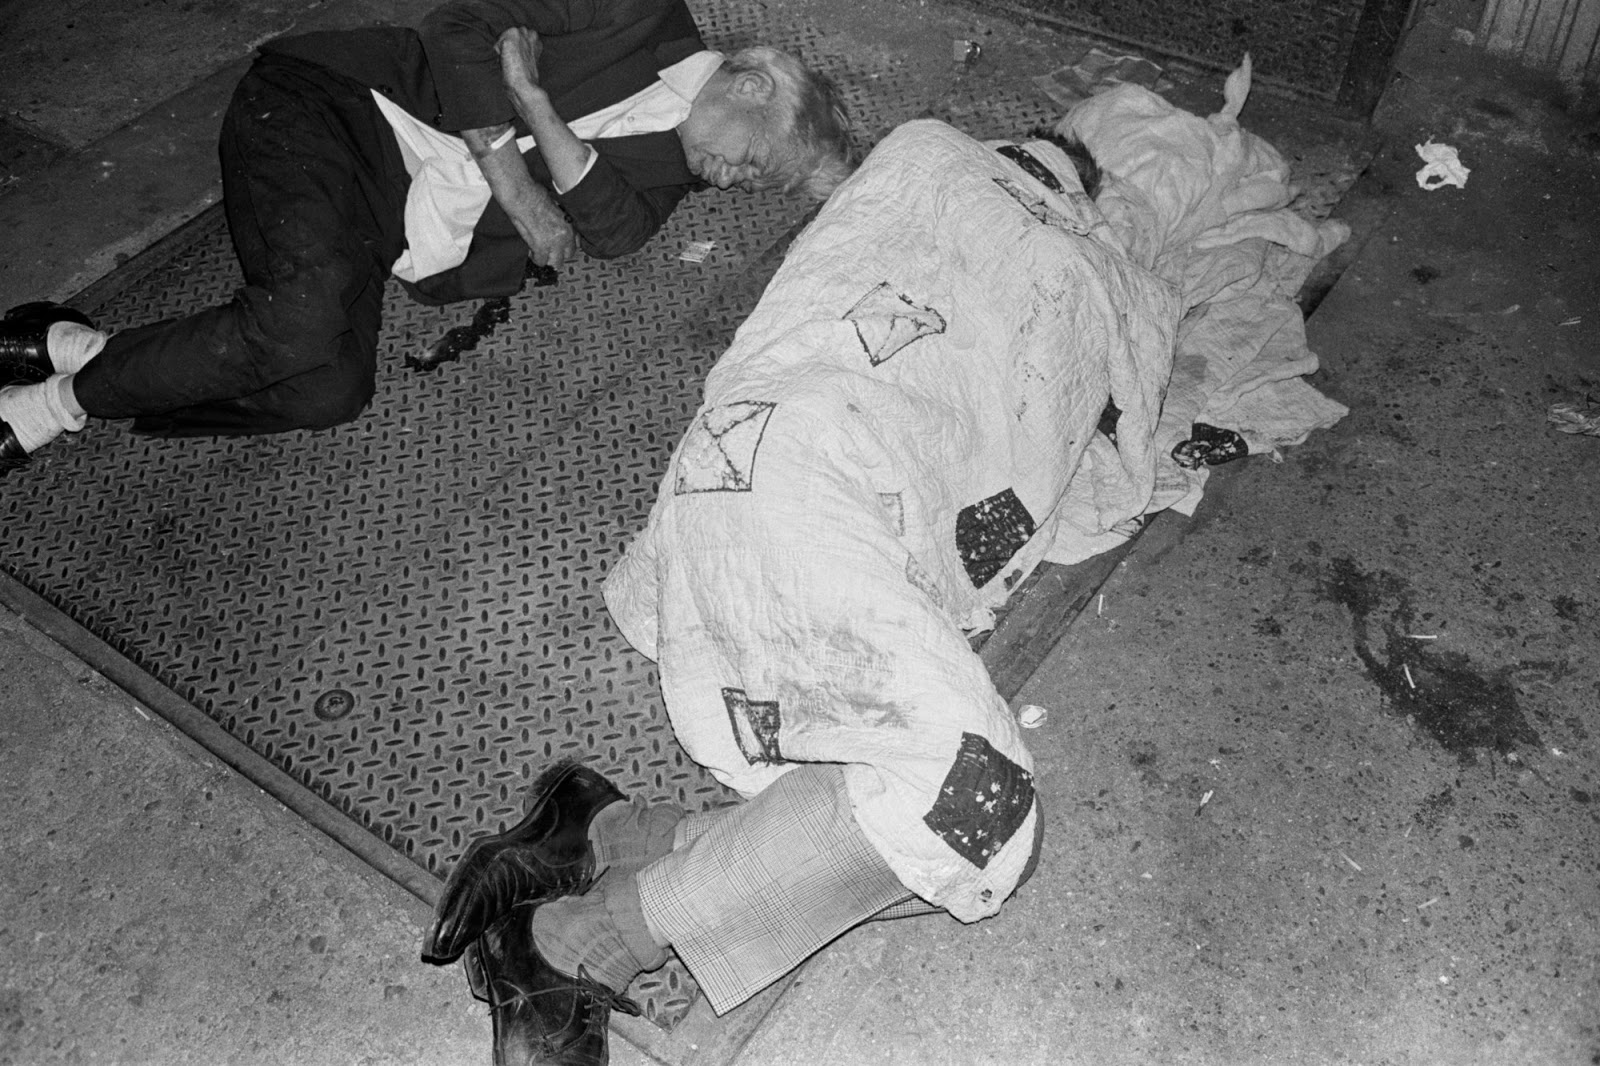 Бомжи, проповедники и проститутки: улицы Нью-Йорка 70-х интересные факты,история,путешествия,ужас,фотография,шок